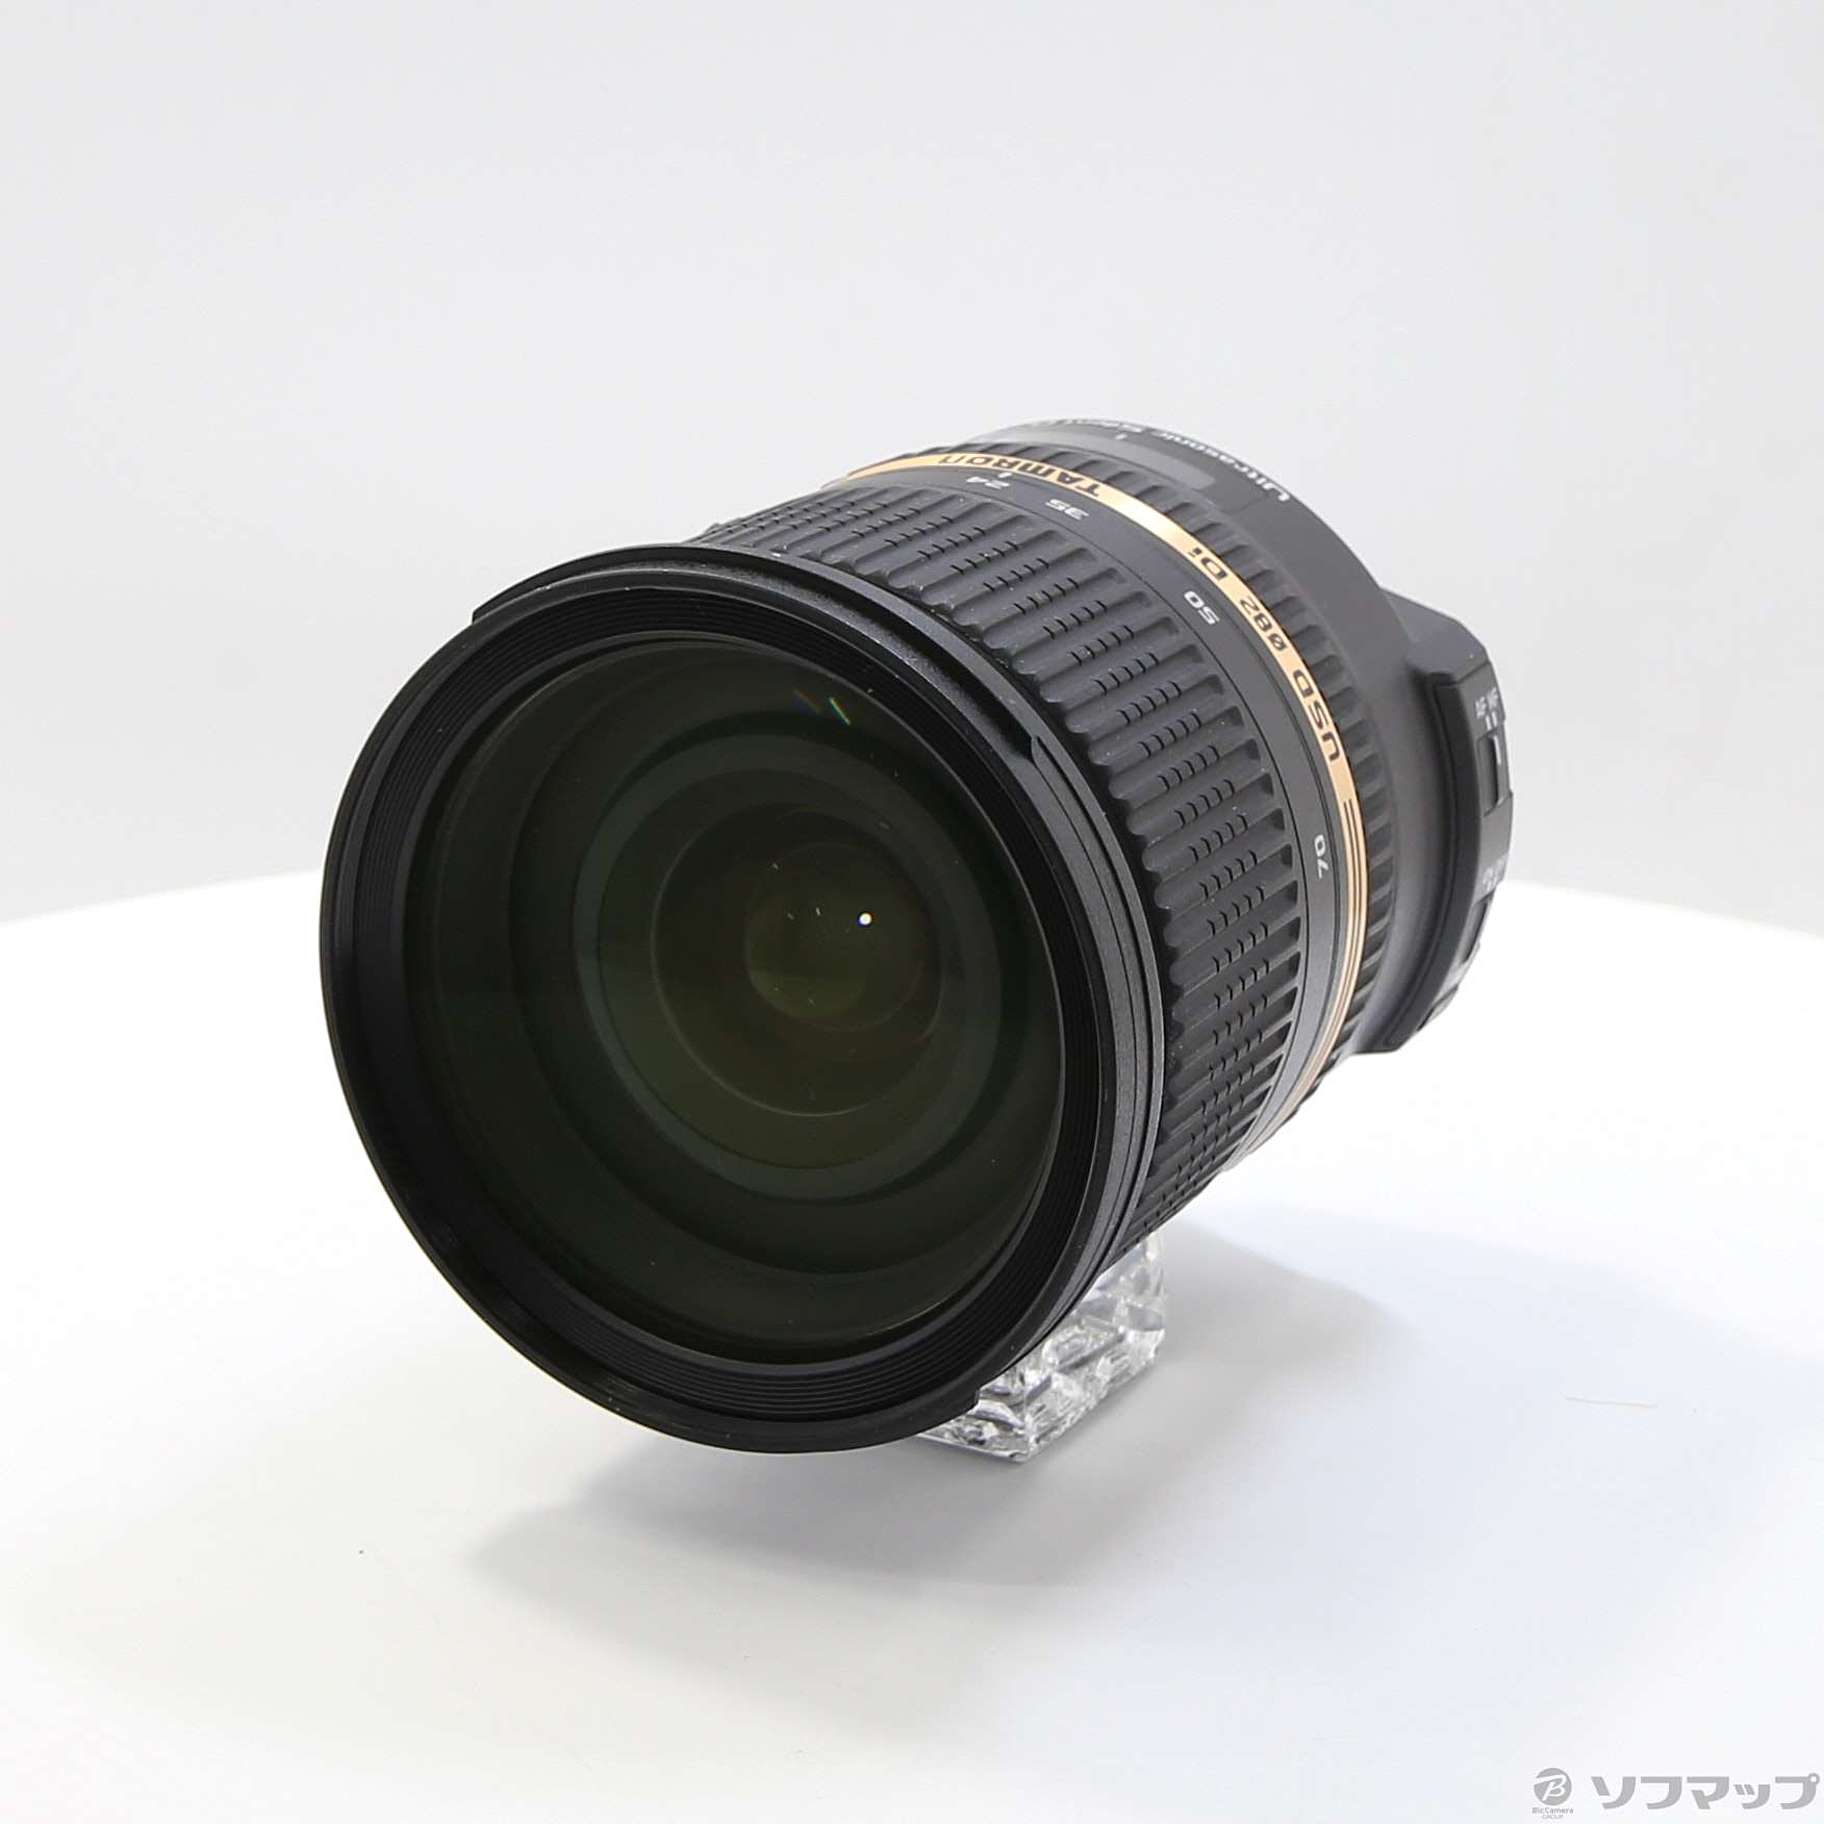 中古】SP 24-70mmF2.8 Di VC USD (Nikon用) (Model A007) (レンズ